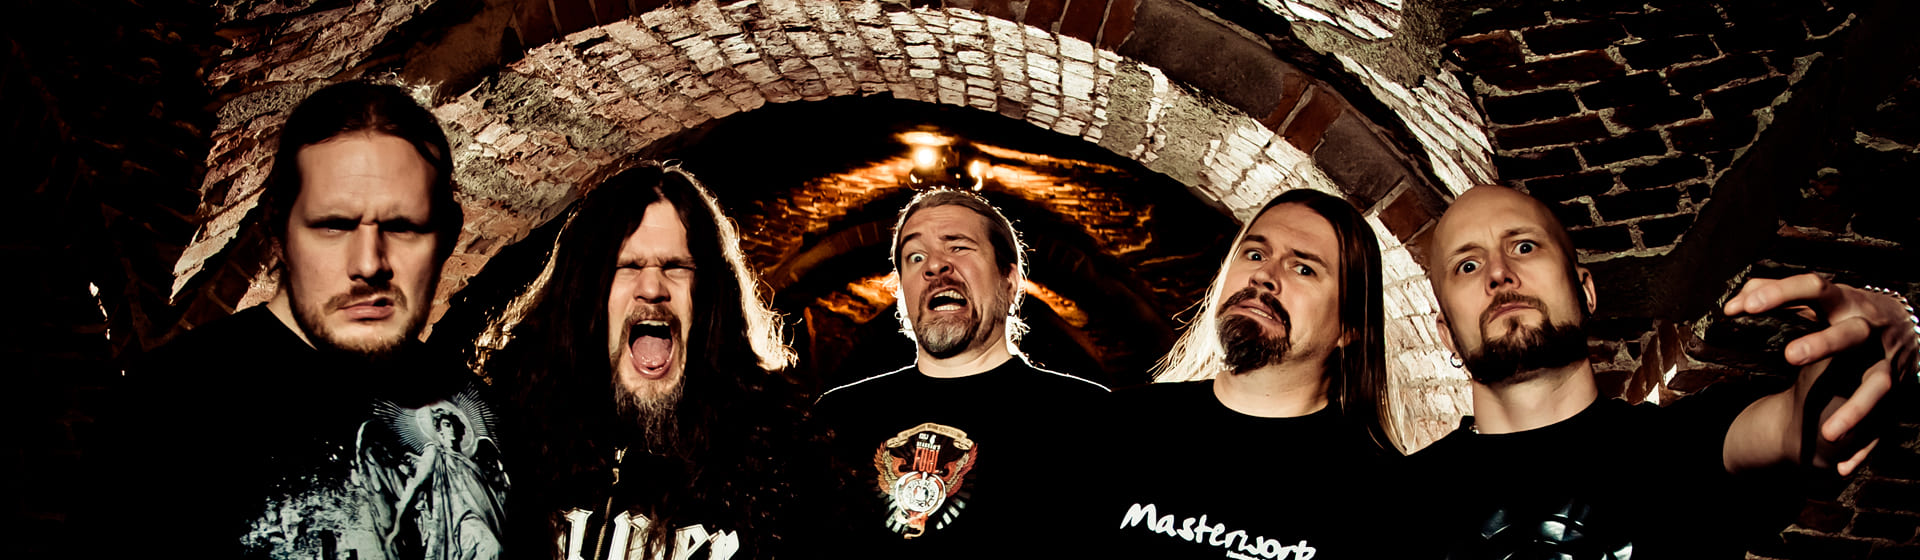 Meshuggah - Мерч и одежда с атрибутикой